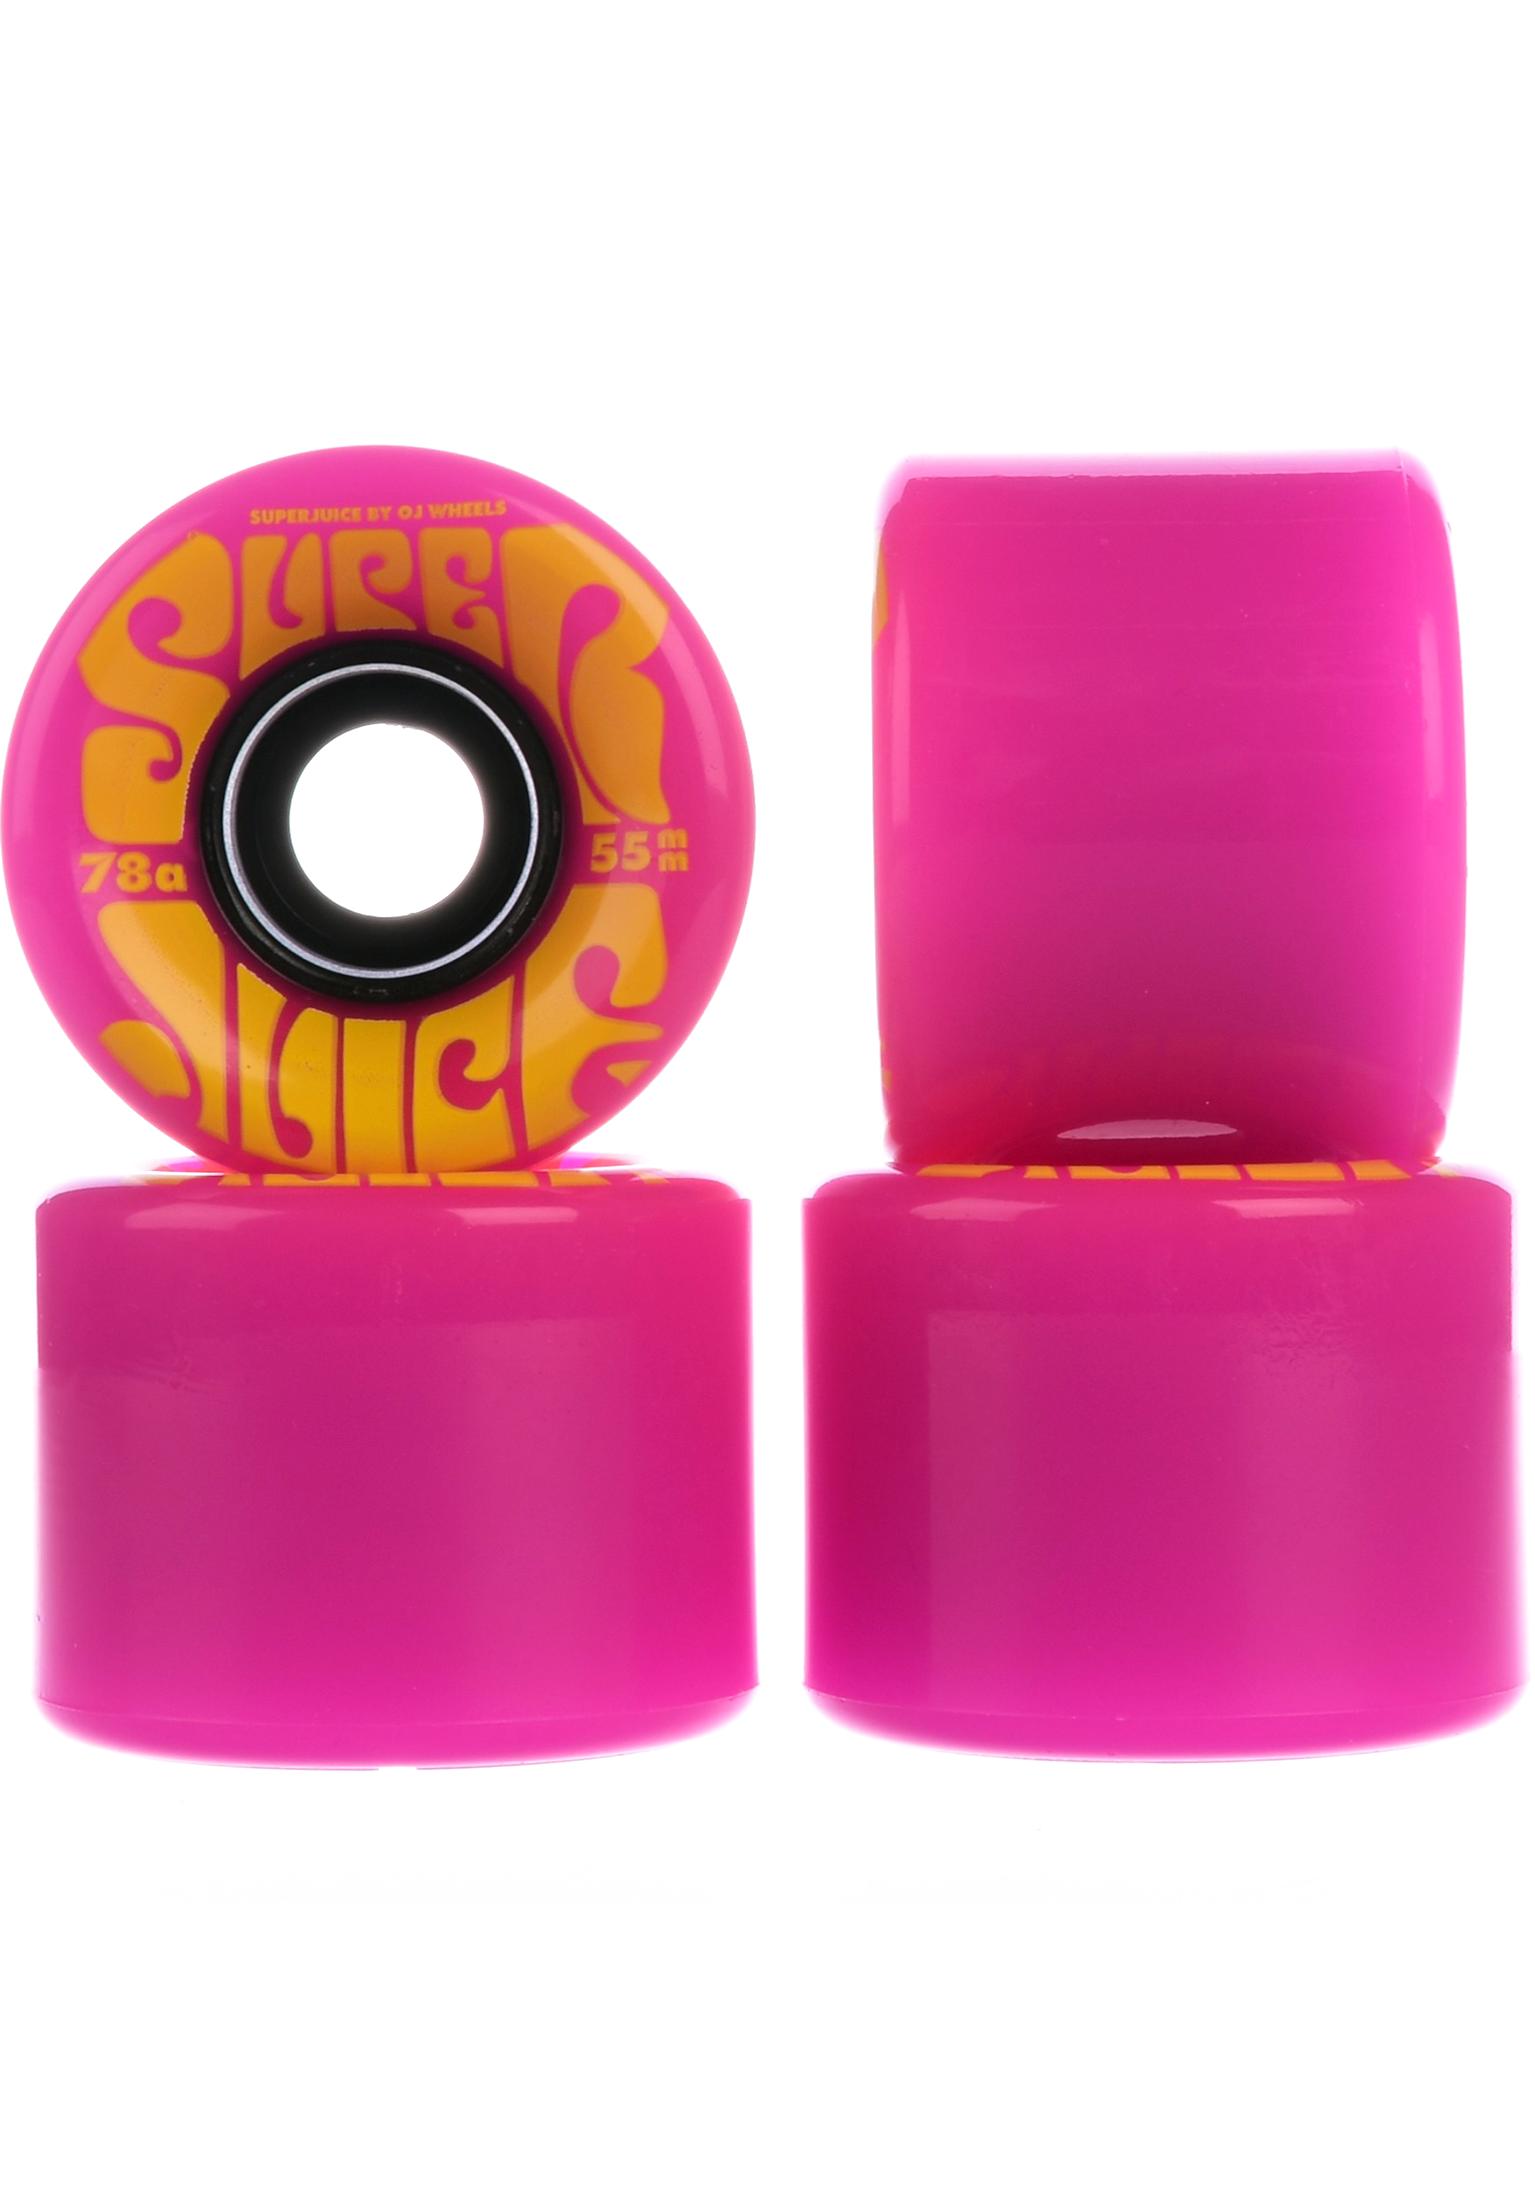 OJ Wheels 55mm Mini Super Juice 78a skateboardwielen pink